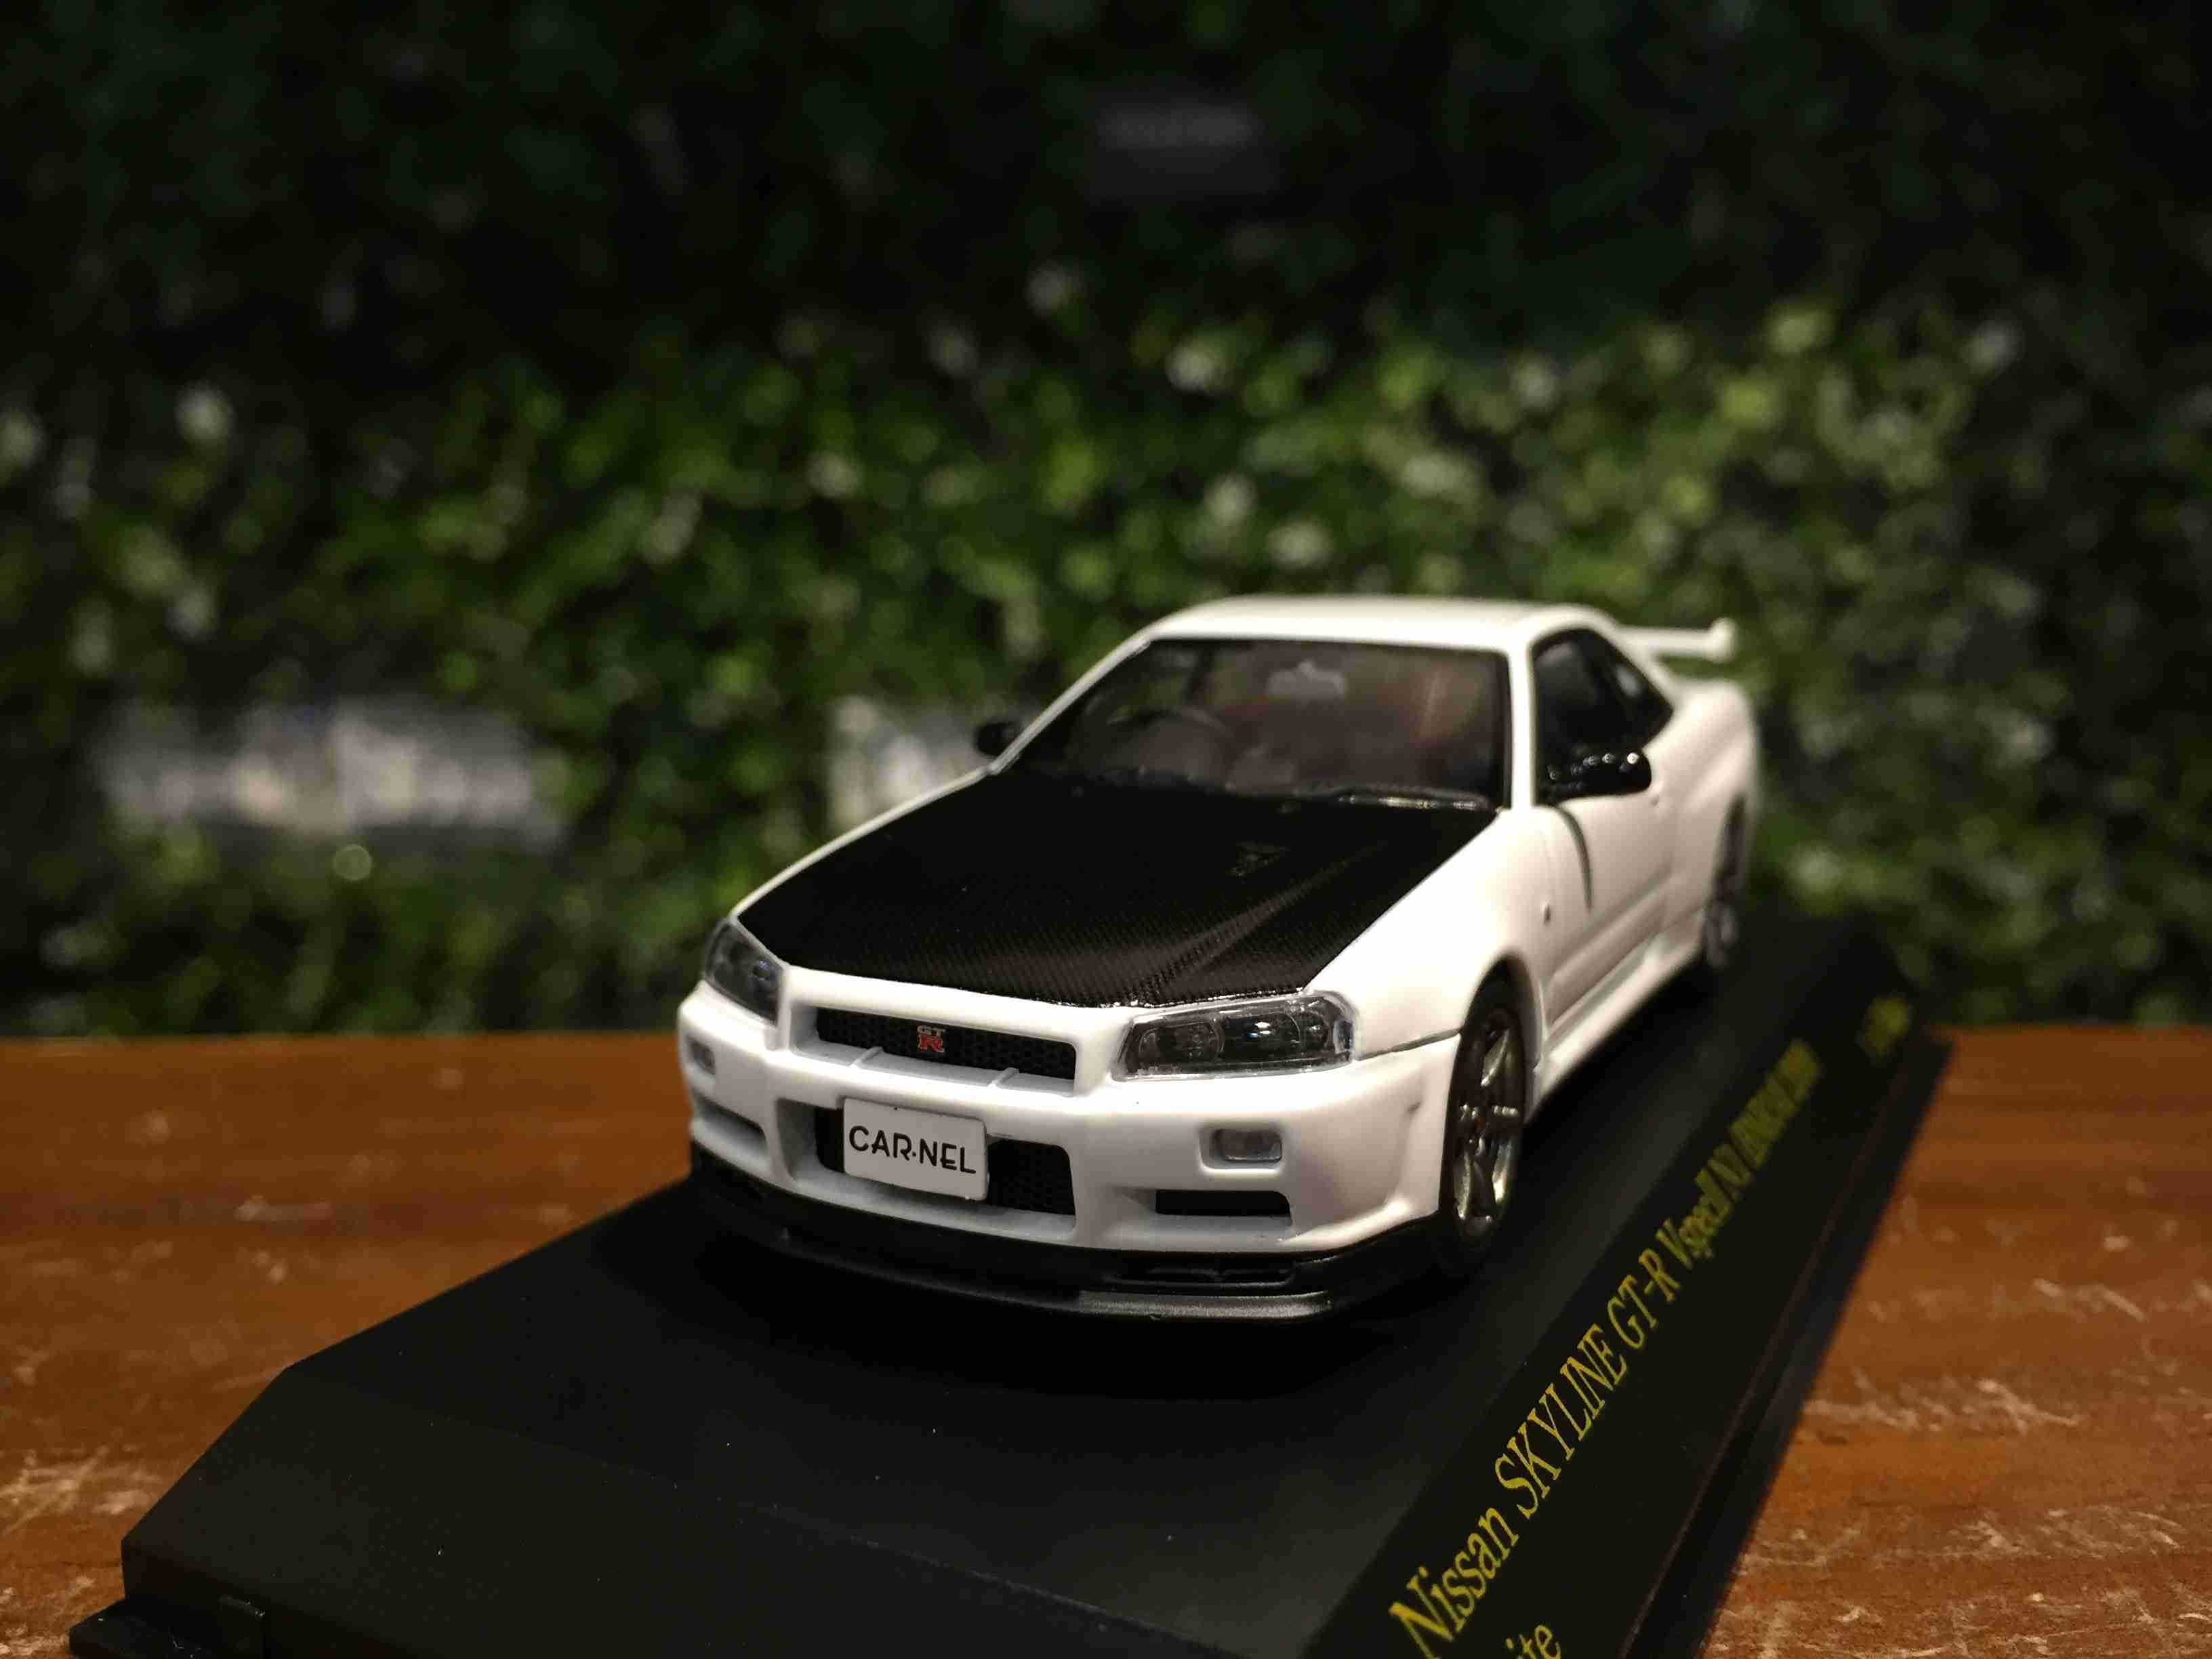 1/43 Carnel Nissan Skyline GT-R (R34) V-Spec 2 CN430001【MGM】